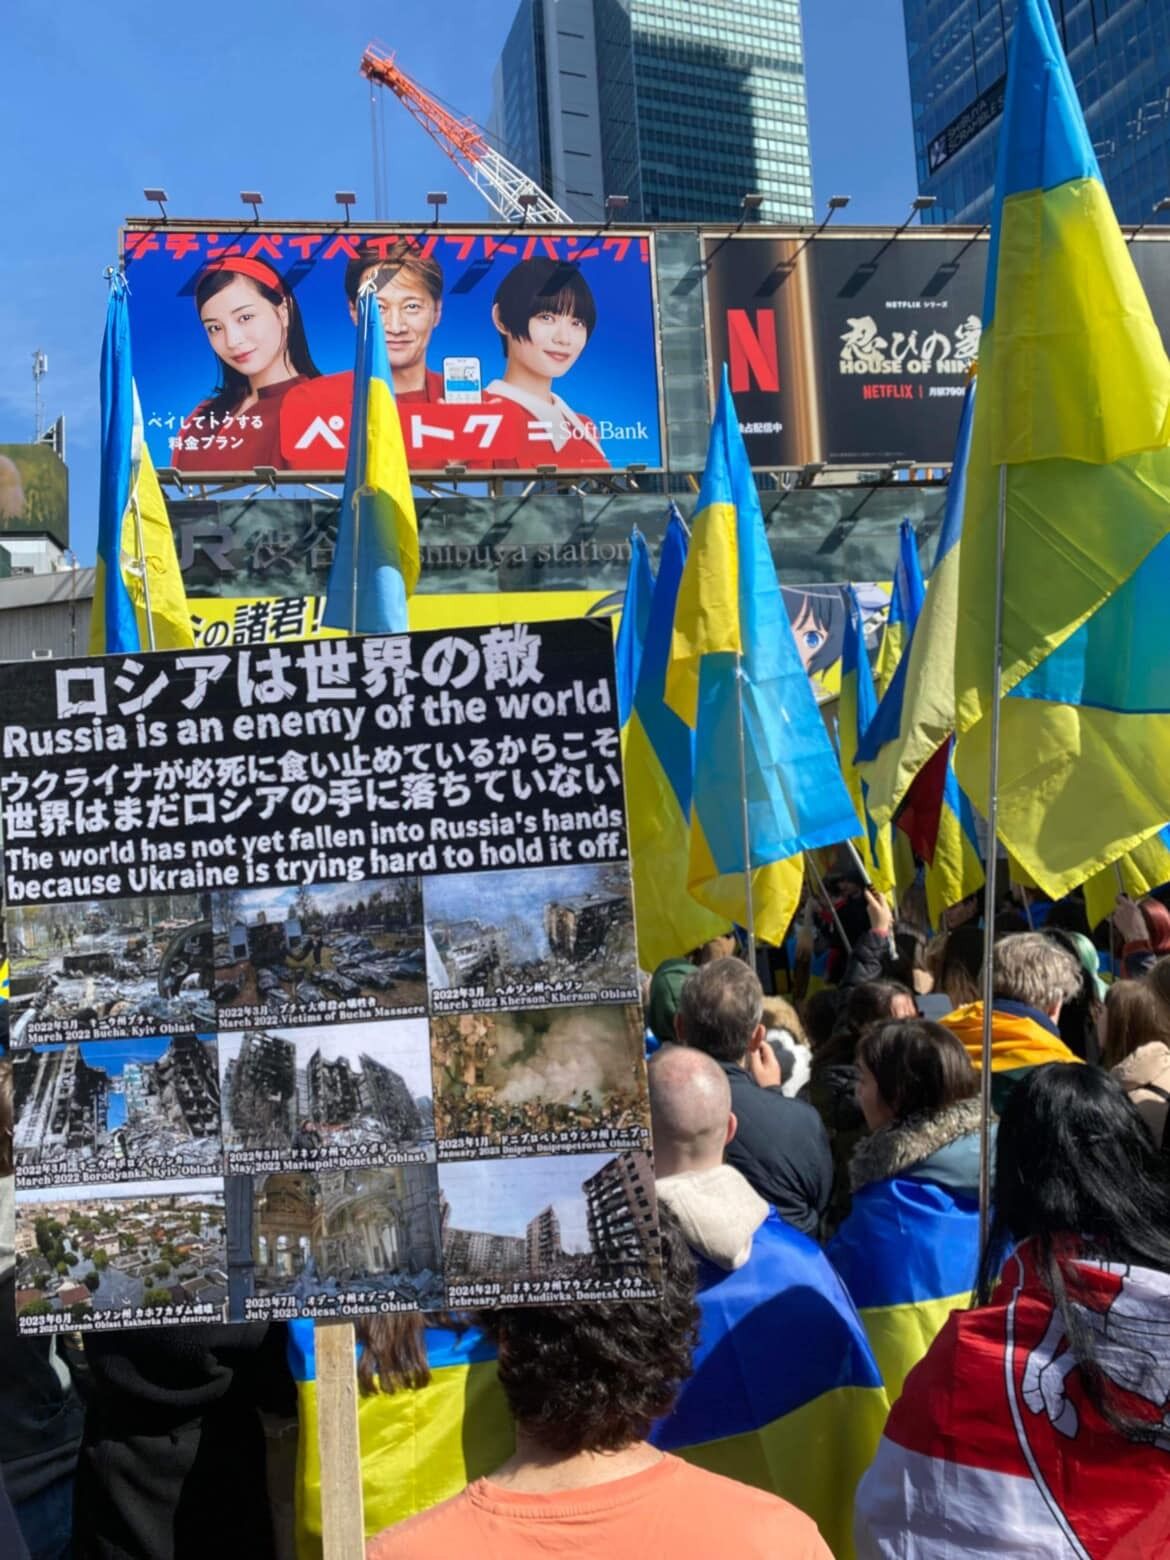  "Війну ще не завершено": українці в усьому світі нагадали про важливість продовжувати підтримувати Україну. Фото і відео